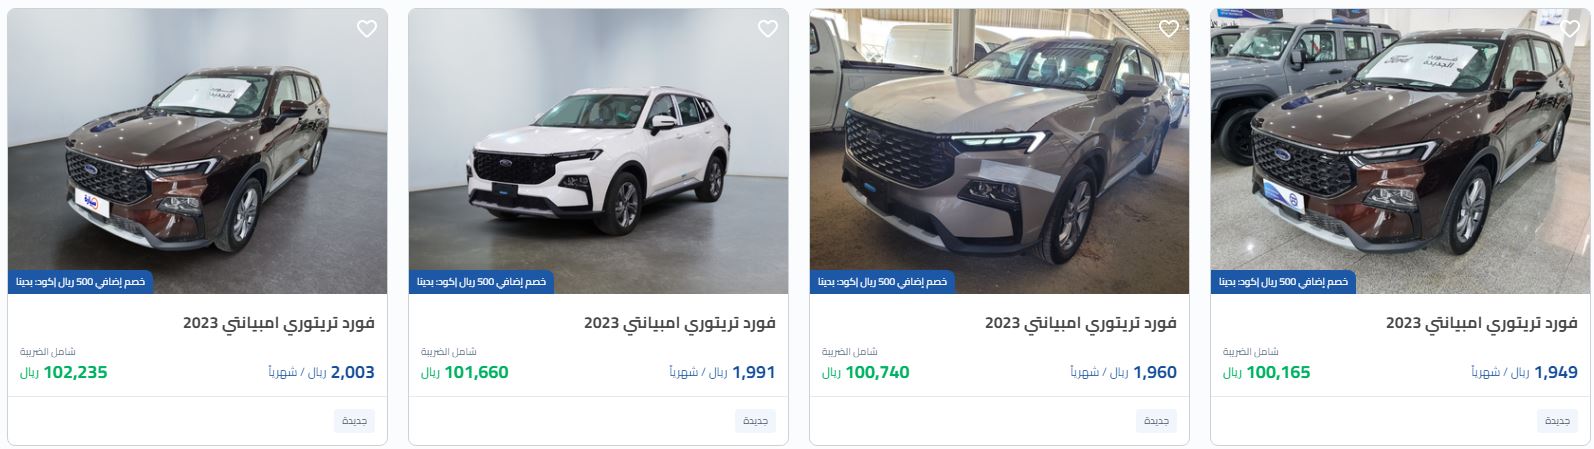 عروض رمضان للسيارات 2023 من syarah